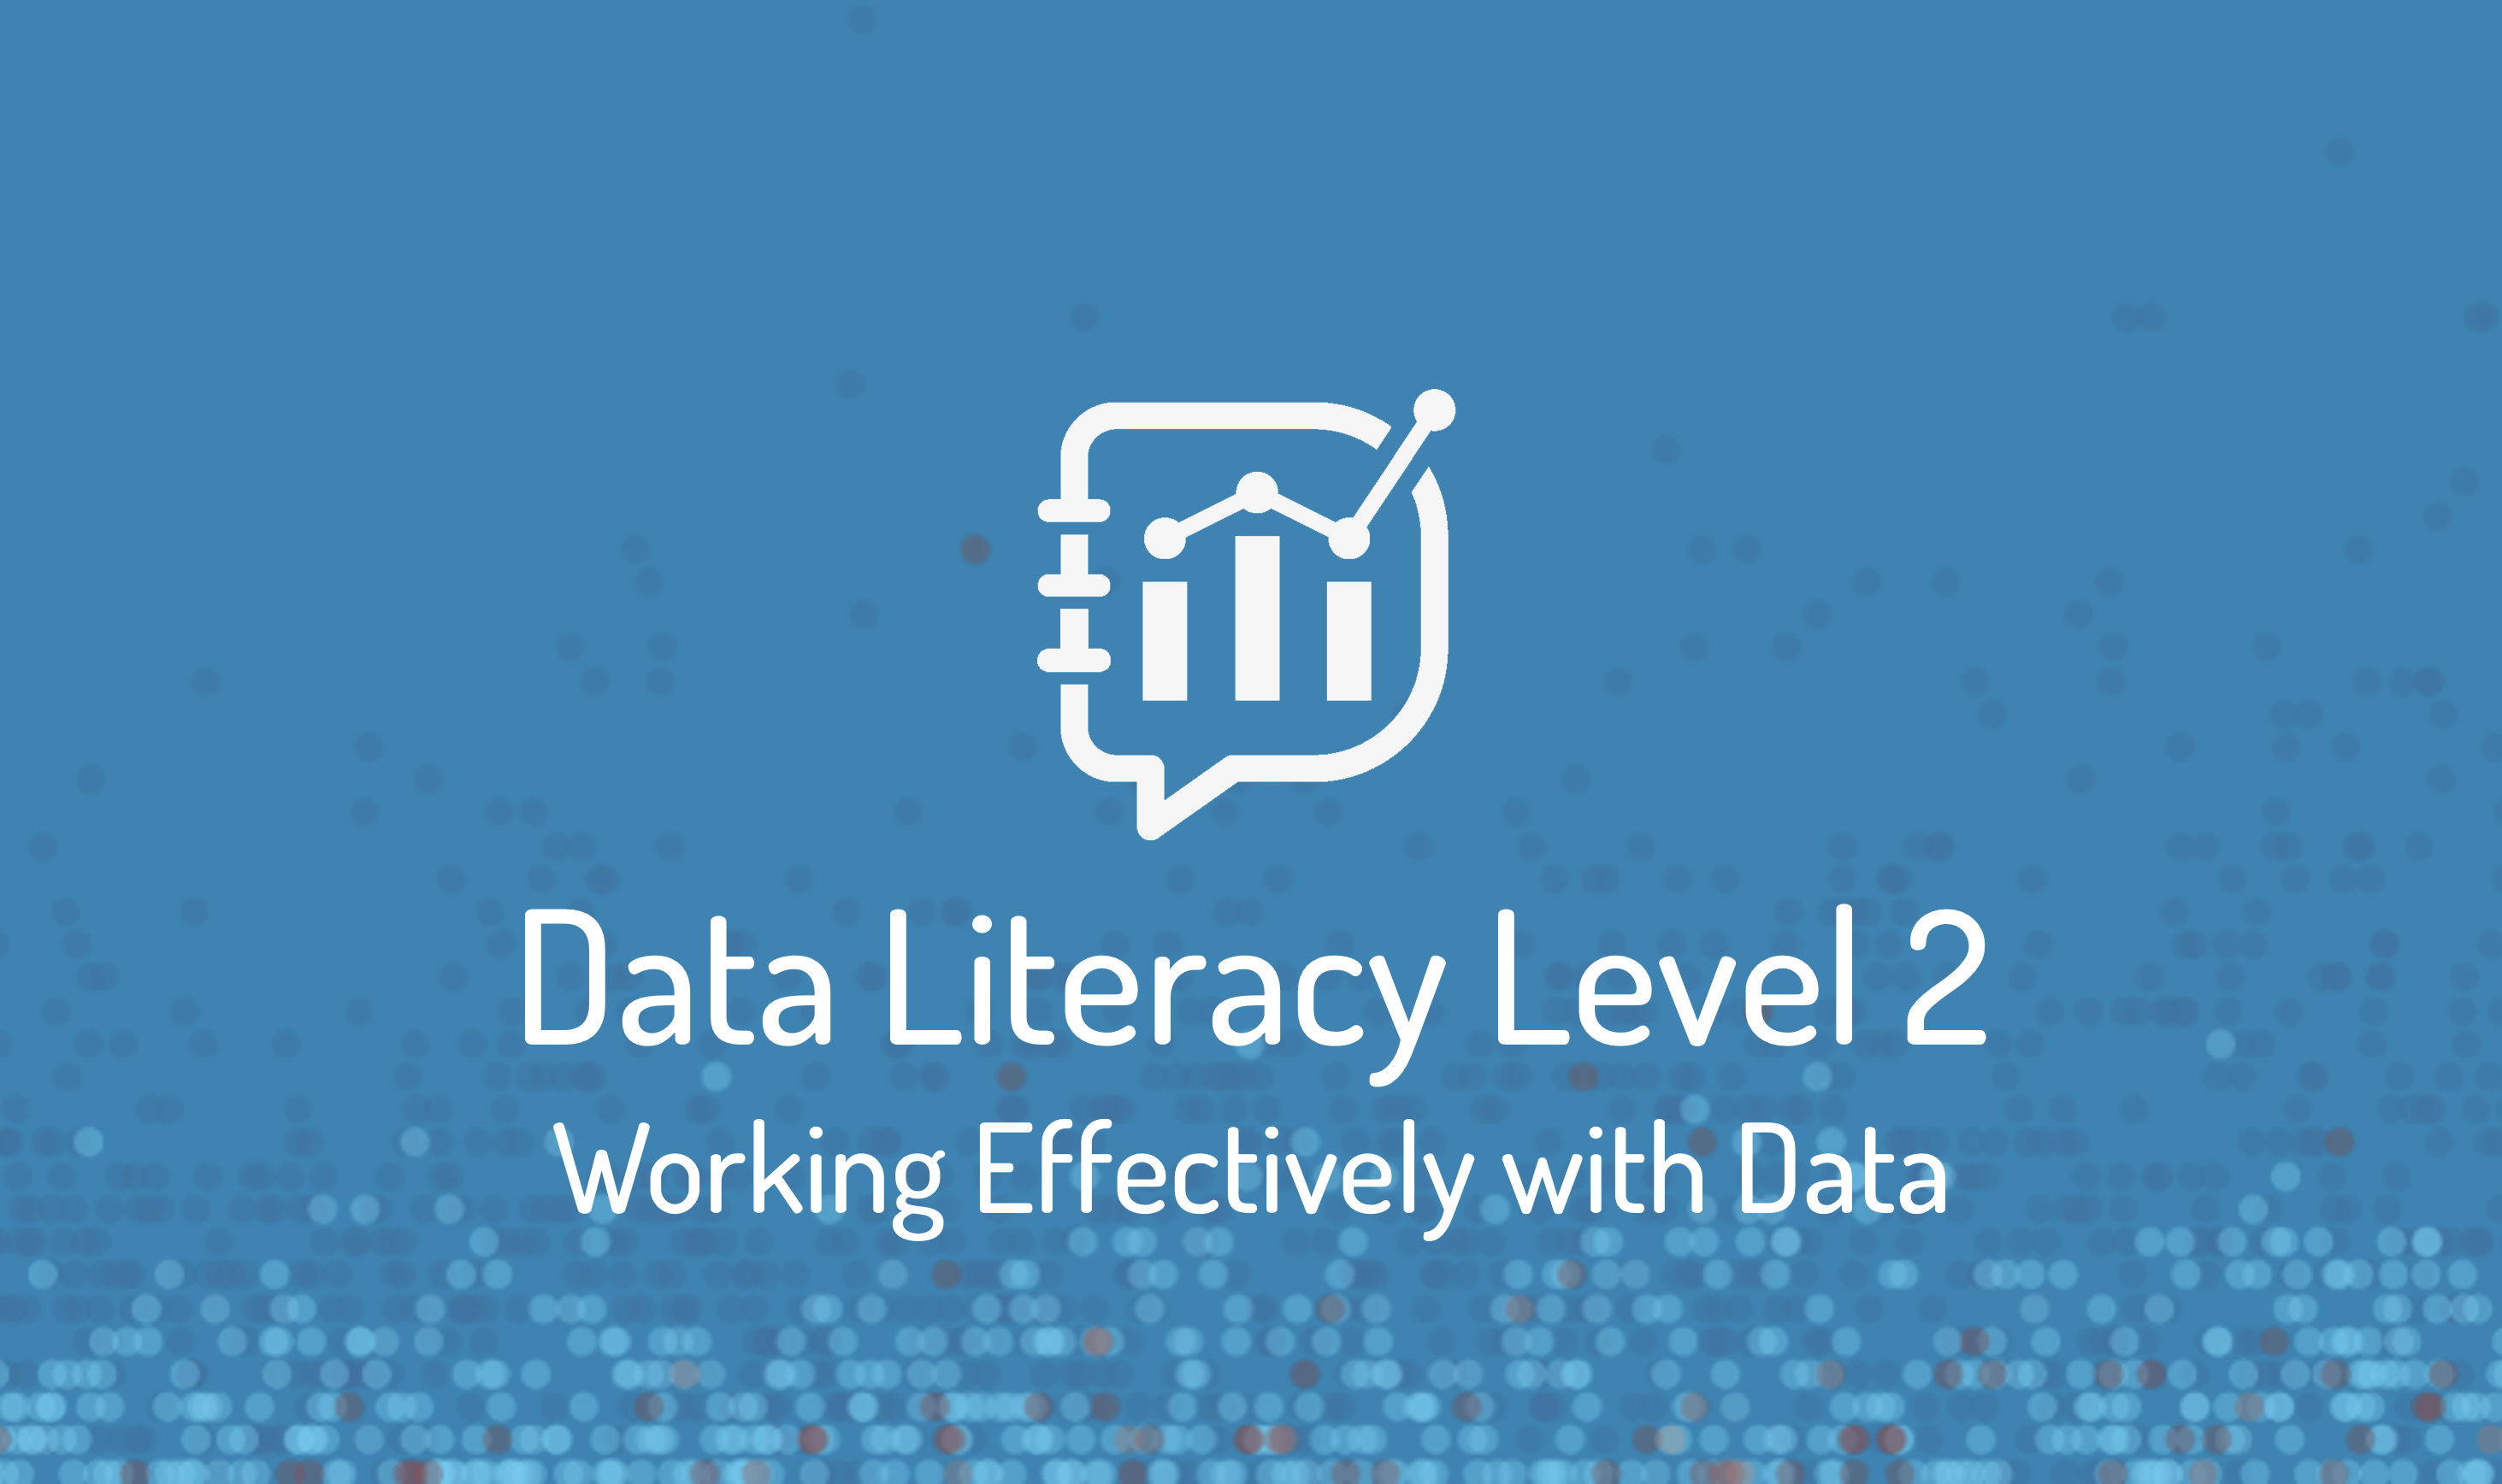 Training | Data Literacy  